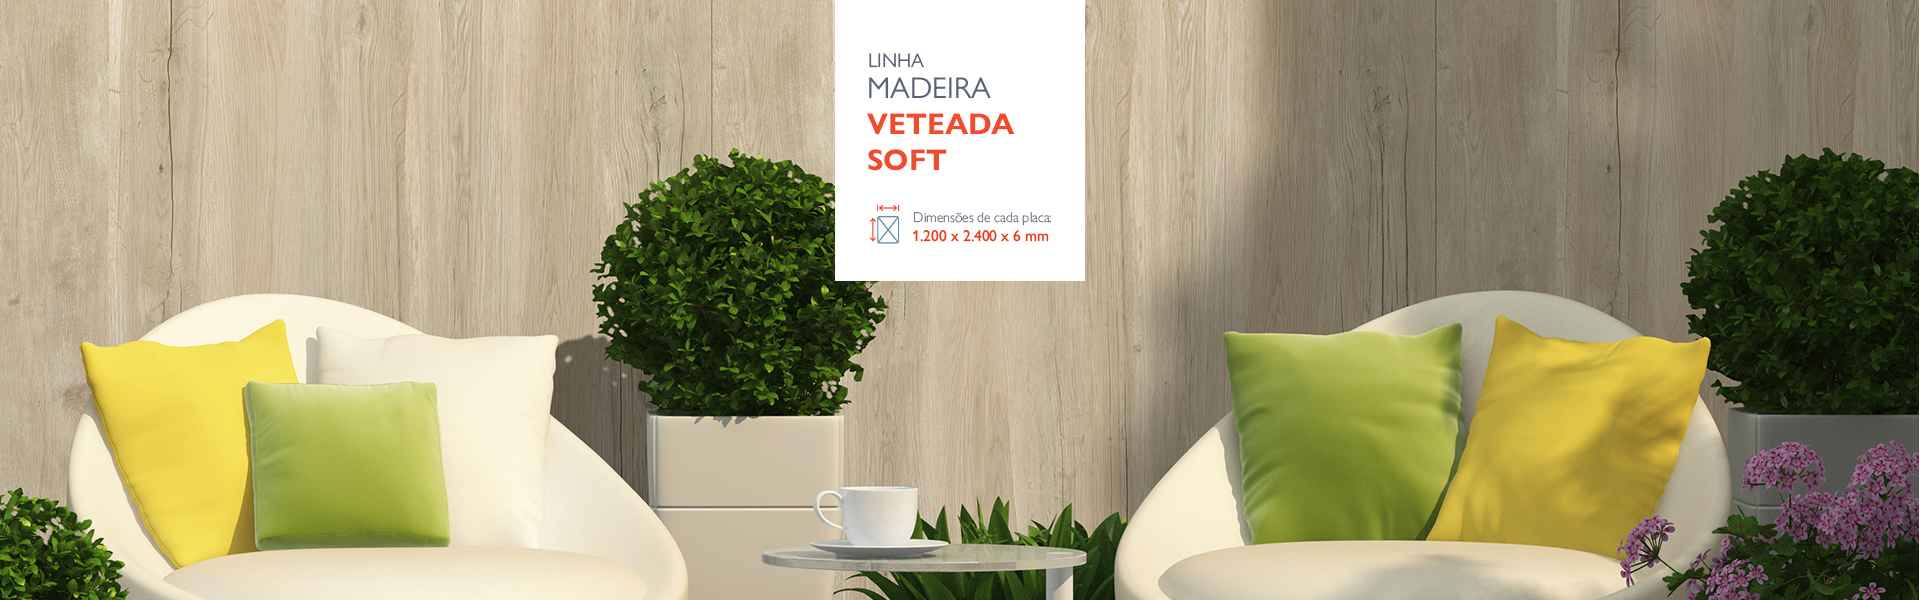 banner-Madeira-veteada-Soft